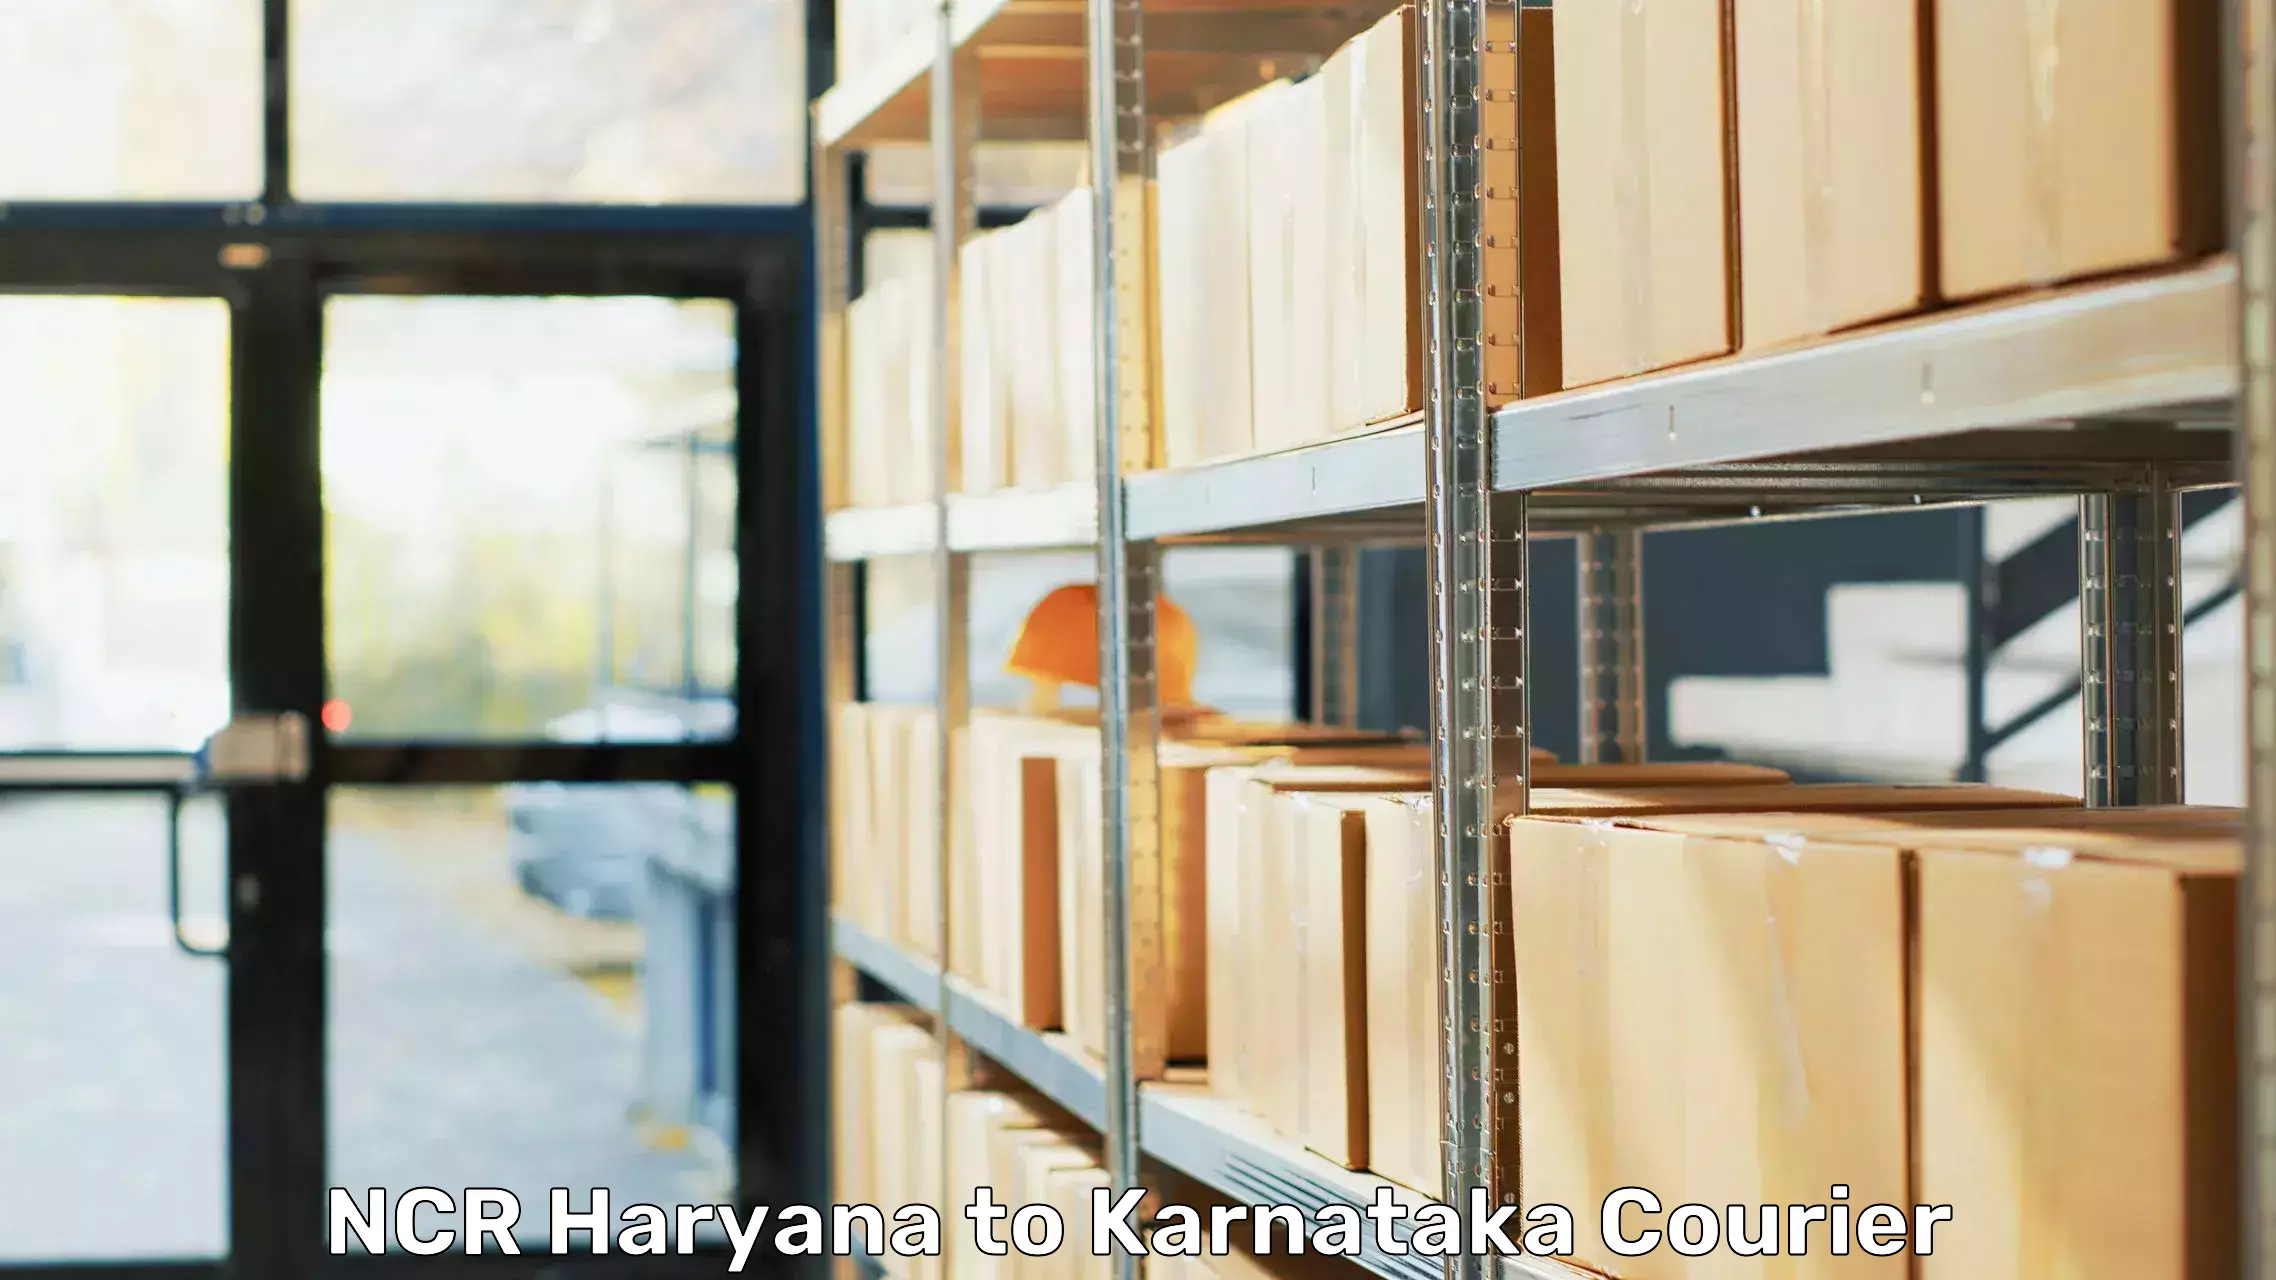 Efficient moving company NCR Haryana to Uttara Kannada